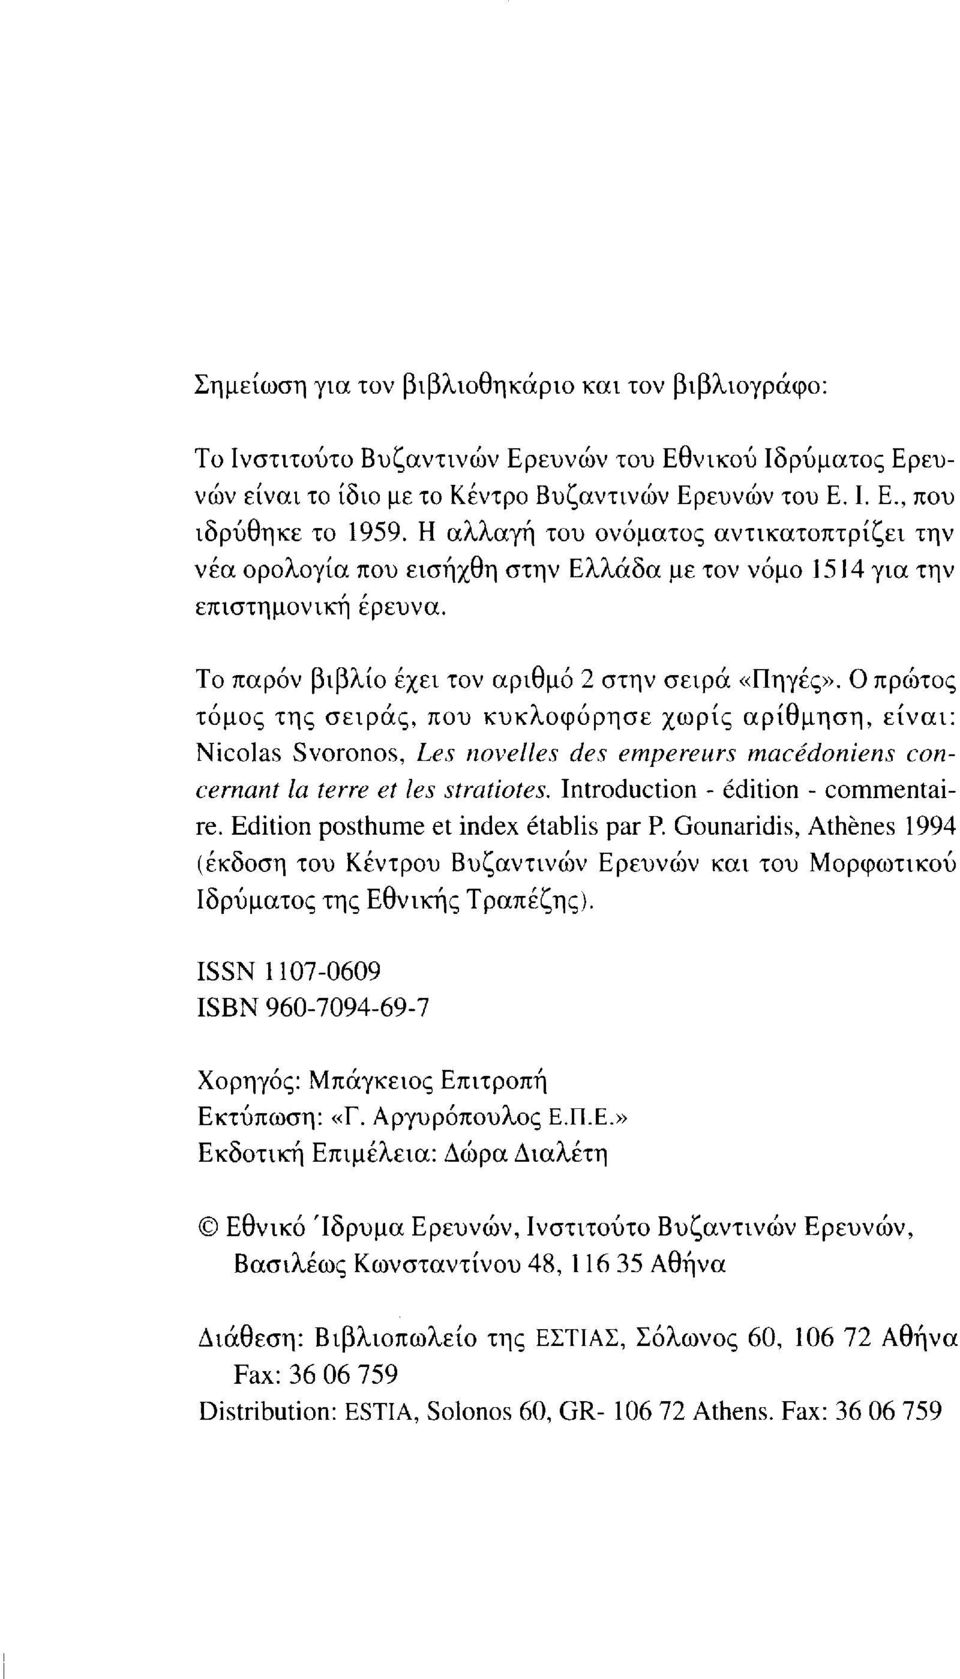 Ο πρώτος τόμος της σειράς, που κυκλοφόρησε χωρίς αρίθμηση, είναι: Nicolas Svoronos, Les novelles des empereurs macédoniens concernant la terre et les stratiotes. Introduction - édition - commentaire.